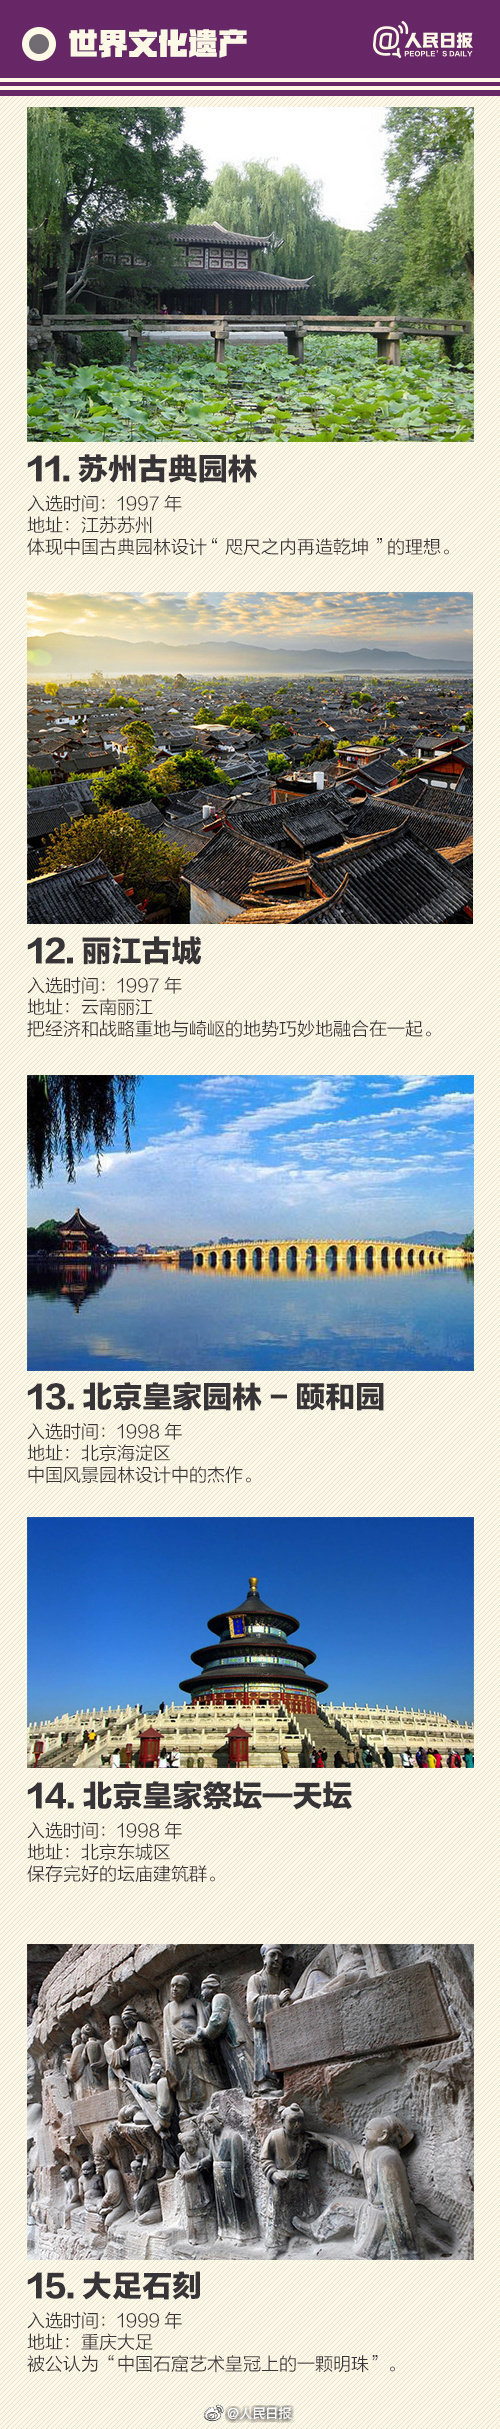 总数第一!中国世界遗产名单 一起去看看吧!